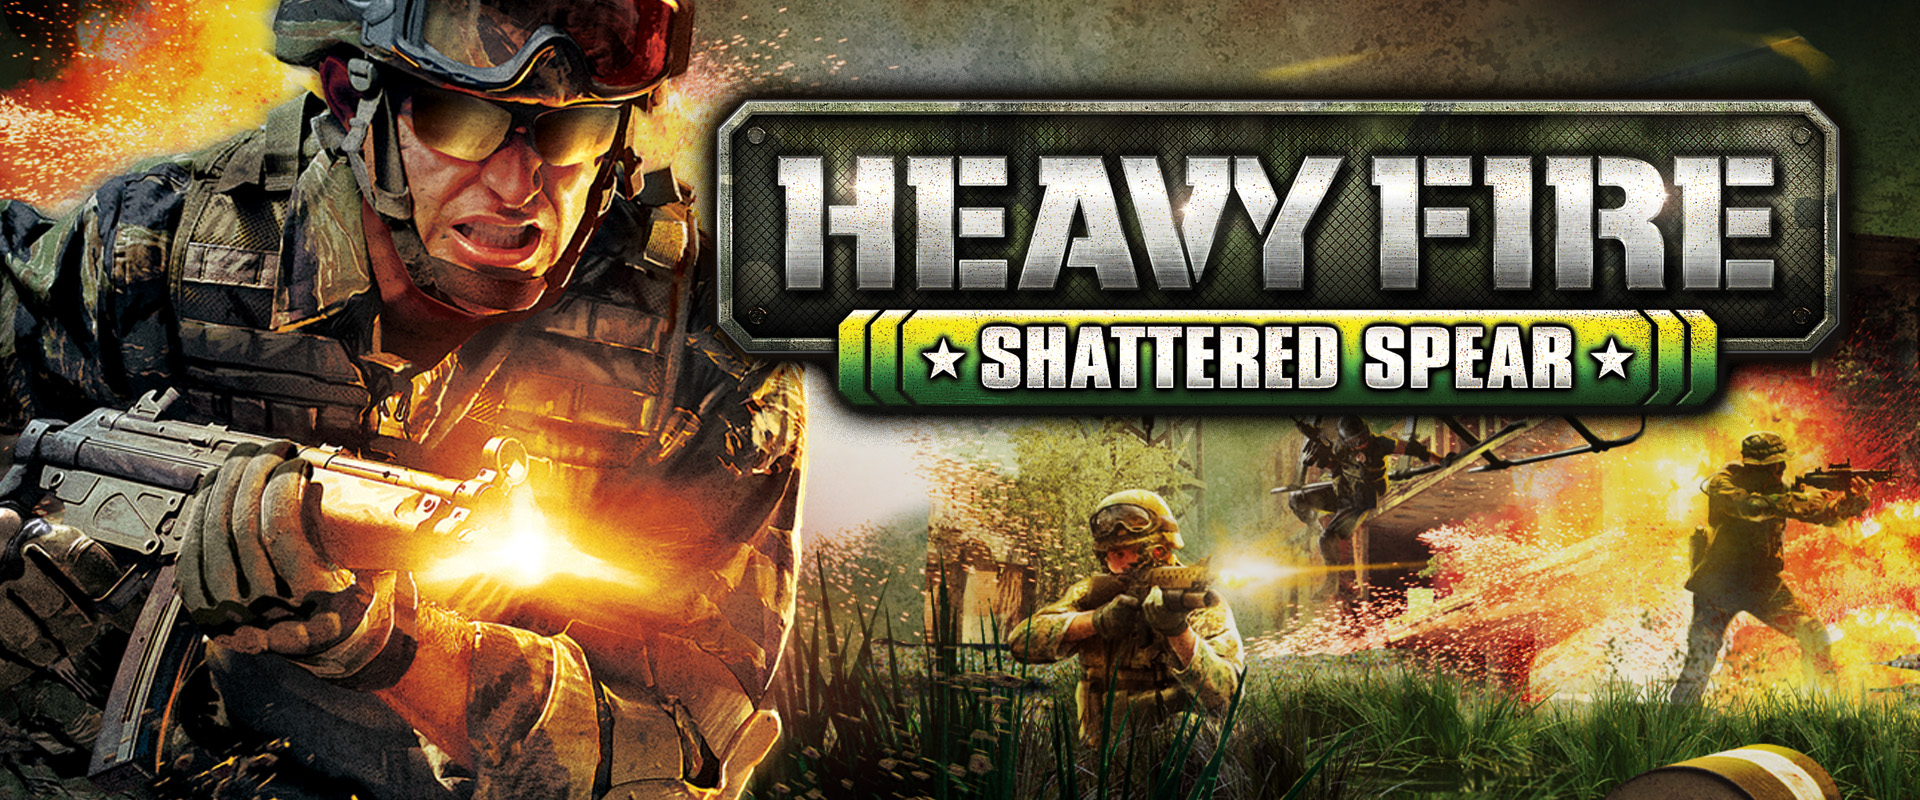 دانلود نسخه فشرده بازی Heavy Fire Shattered Spear با حجم 370 مگابایت